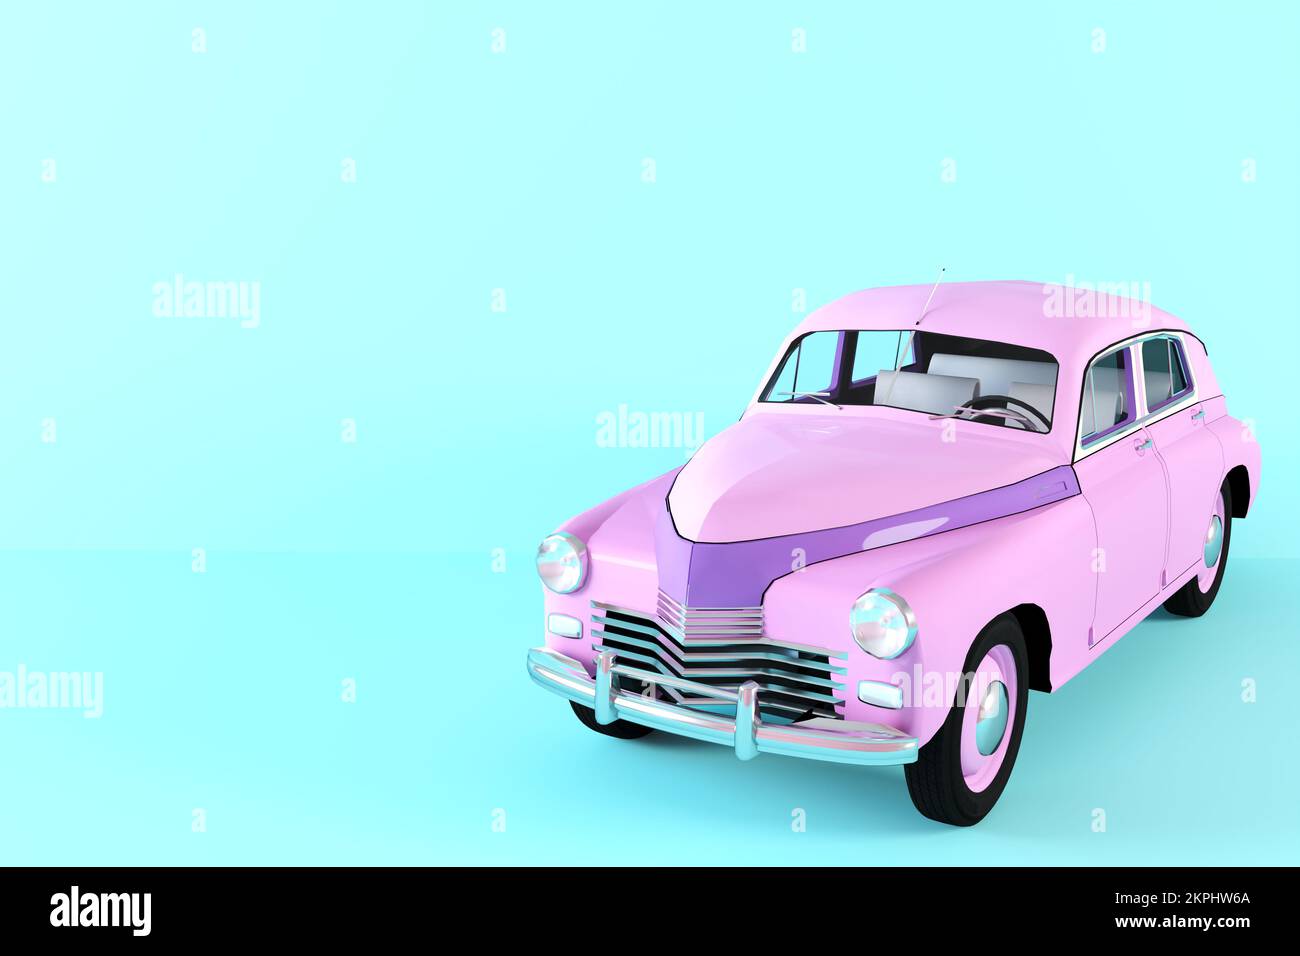 Vintage-Spielzeugauto in Lila auf blauem Hintergrund 3D-Abbildung. Maßstabsgetreues Modell eines Retro-Autos in hellen Pastellfarben. Klassisches, seltenes Auto. Stilisiertes Spielzeug Stockfoto